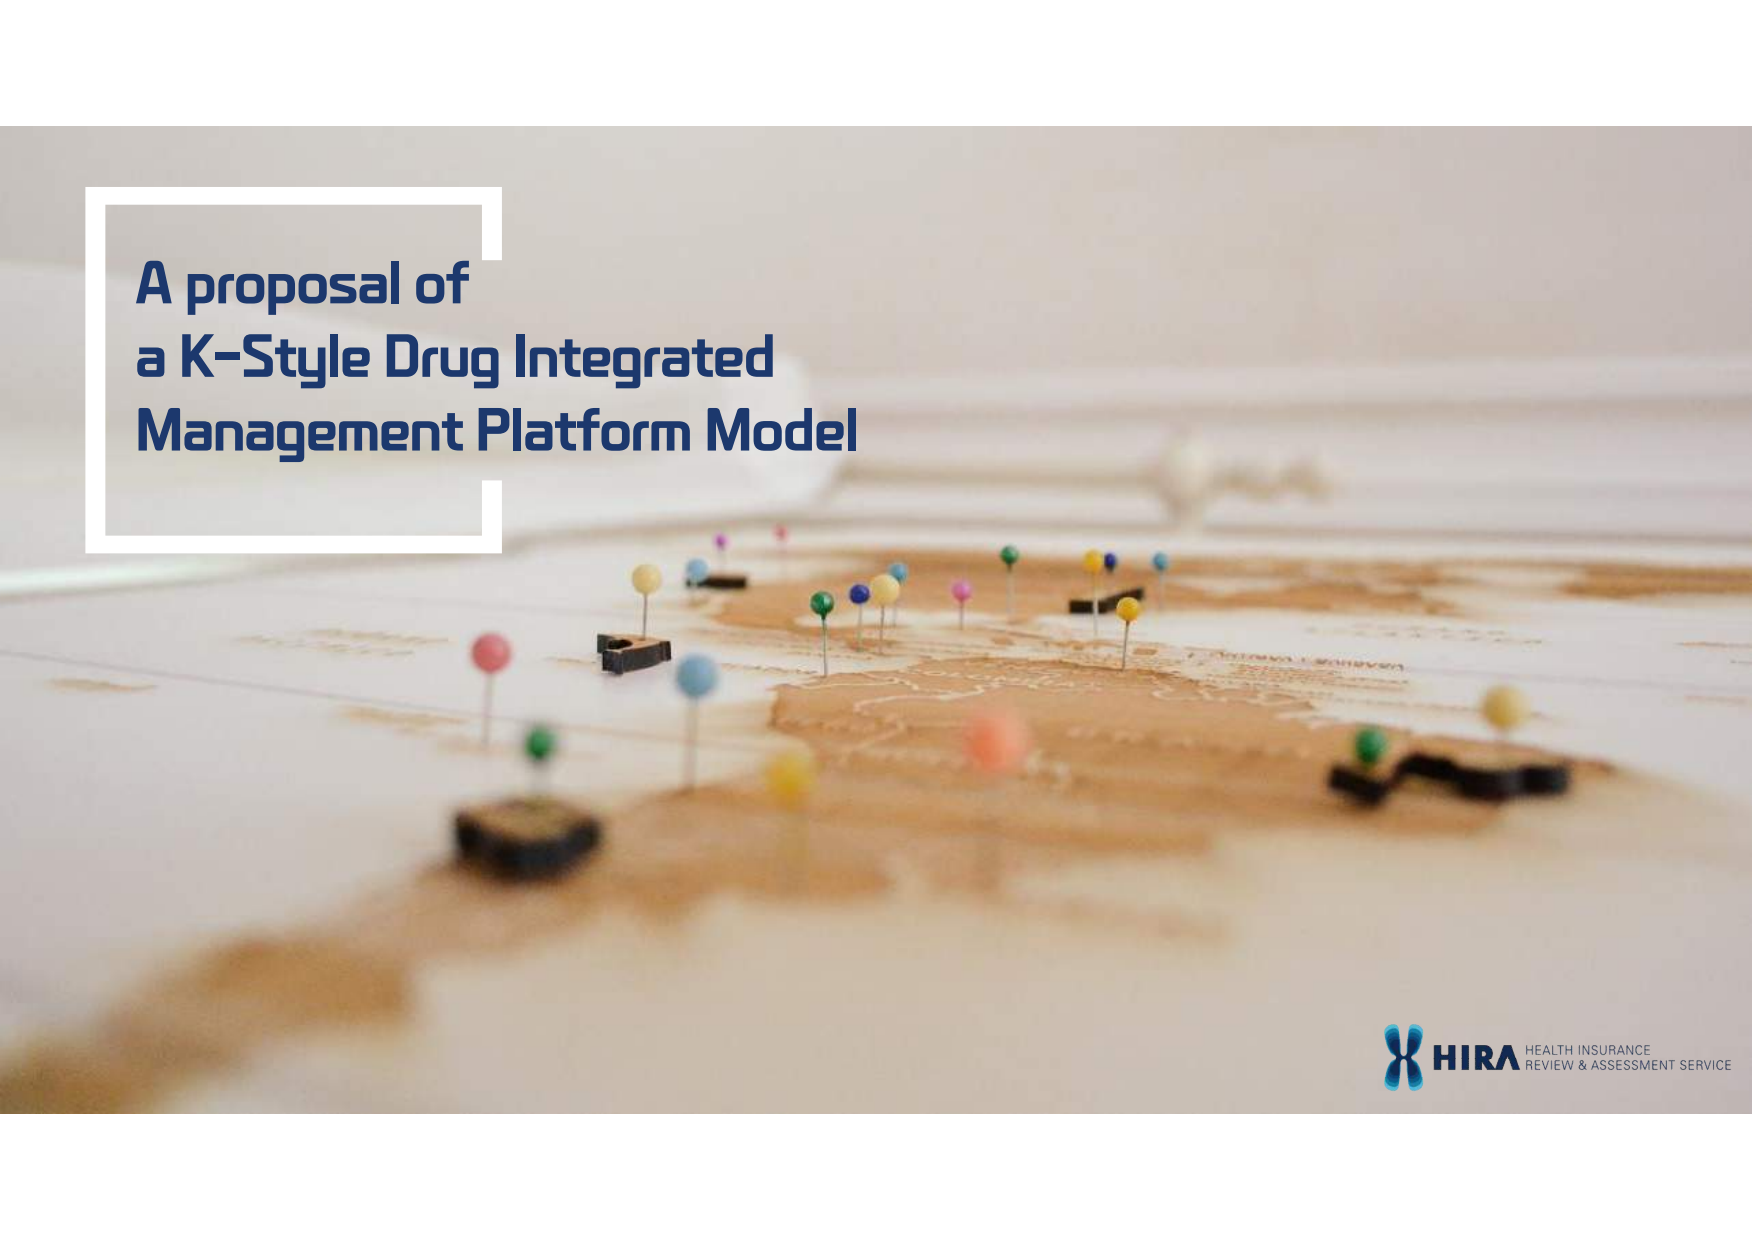 A proposal of a K-Style Drug Integrated Management Platform Model